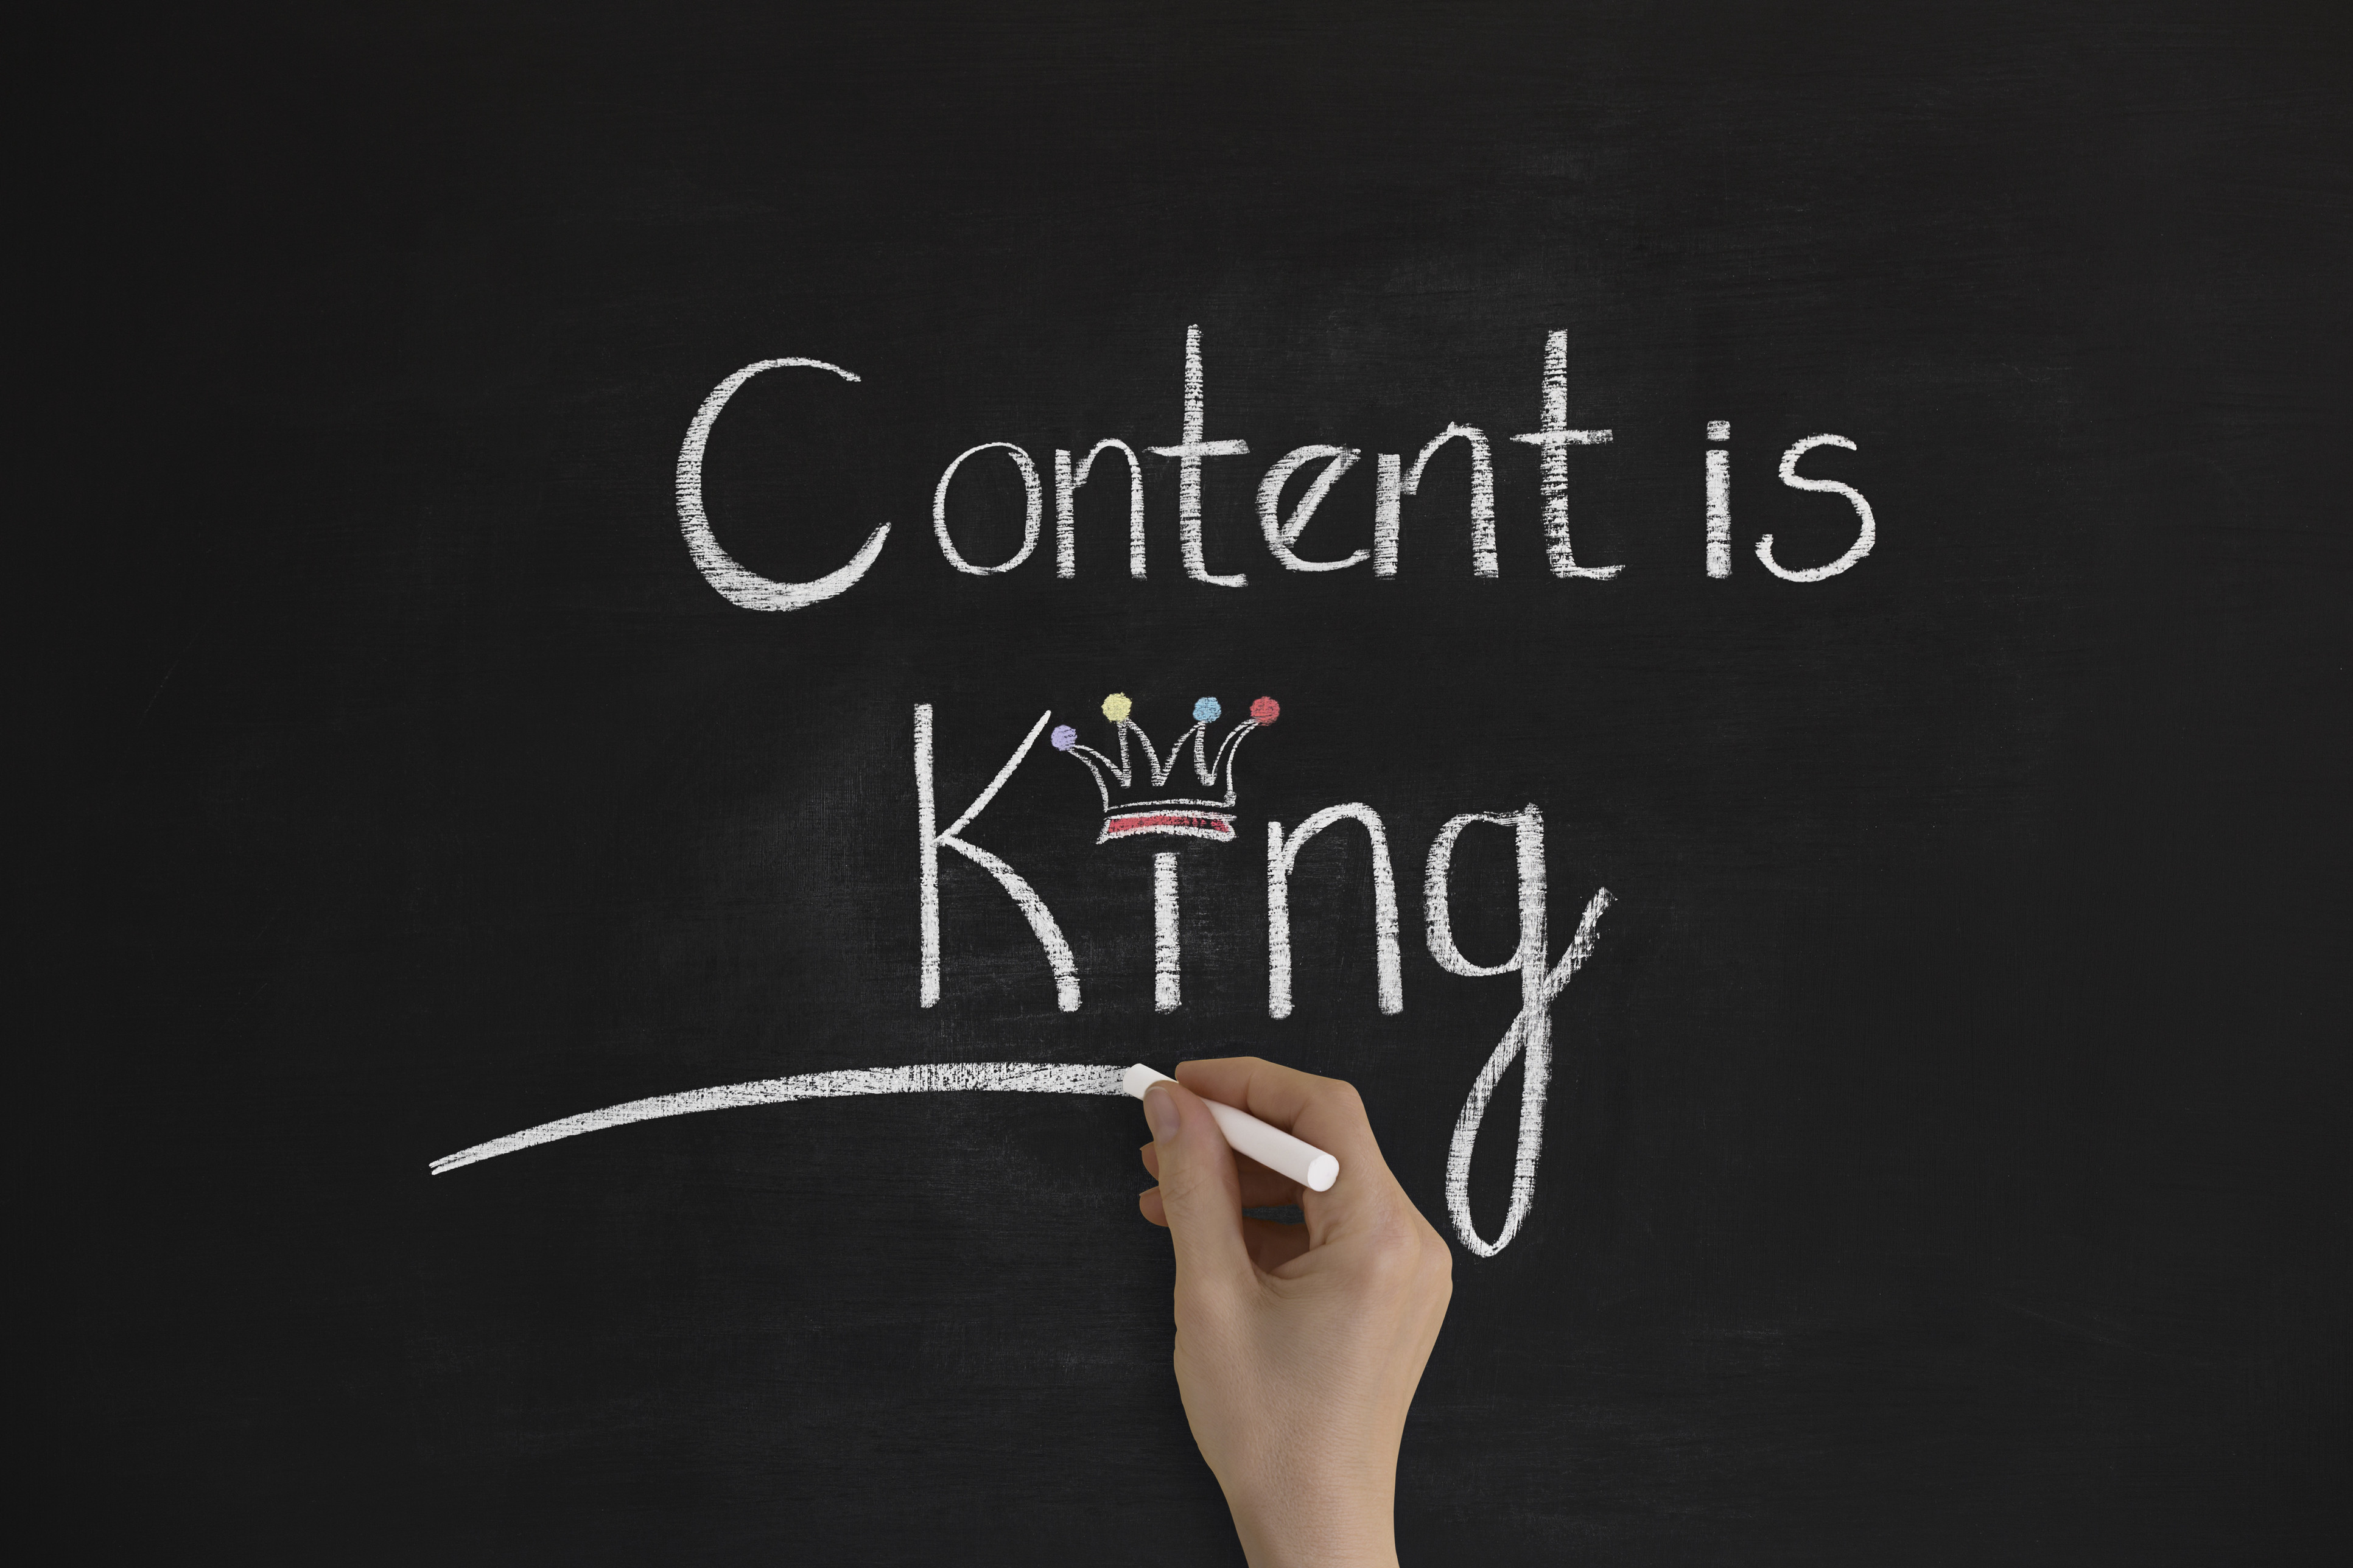 "Content is king" handwritten on chalkboard